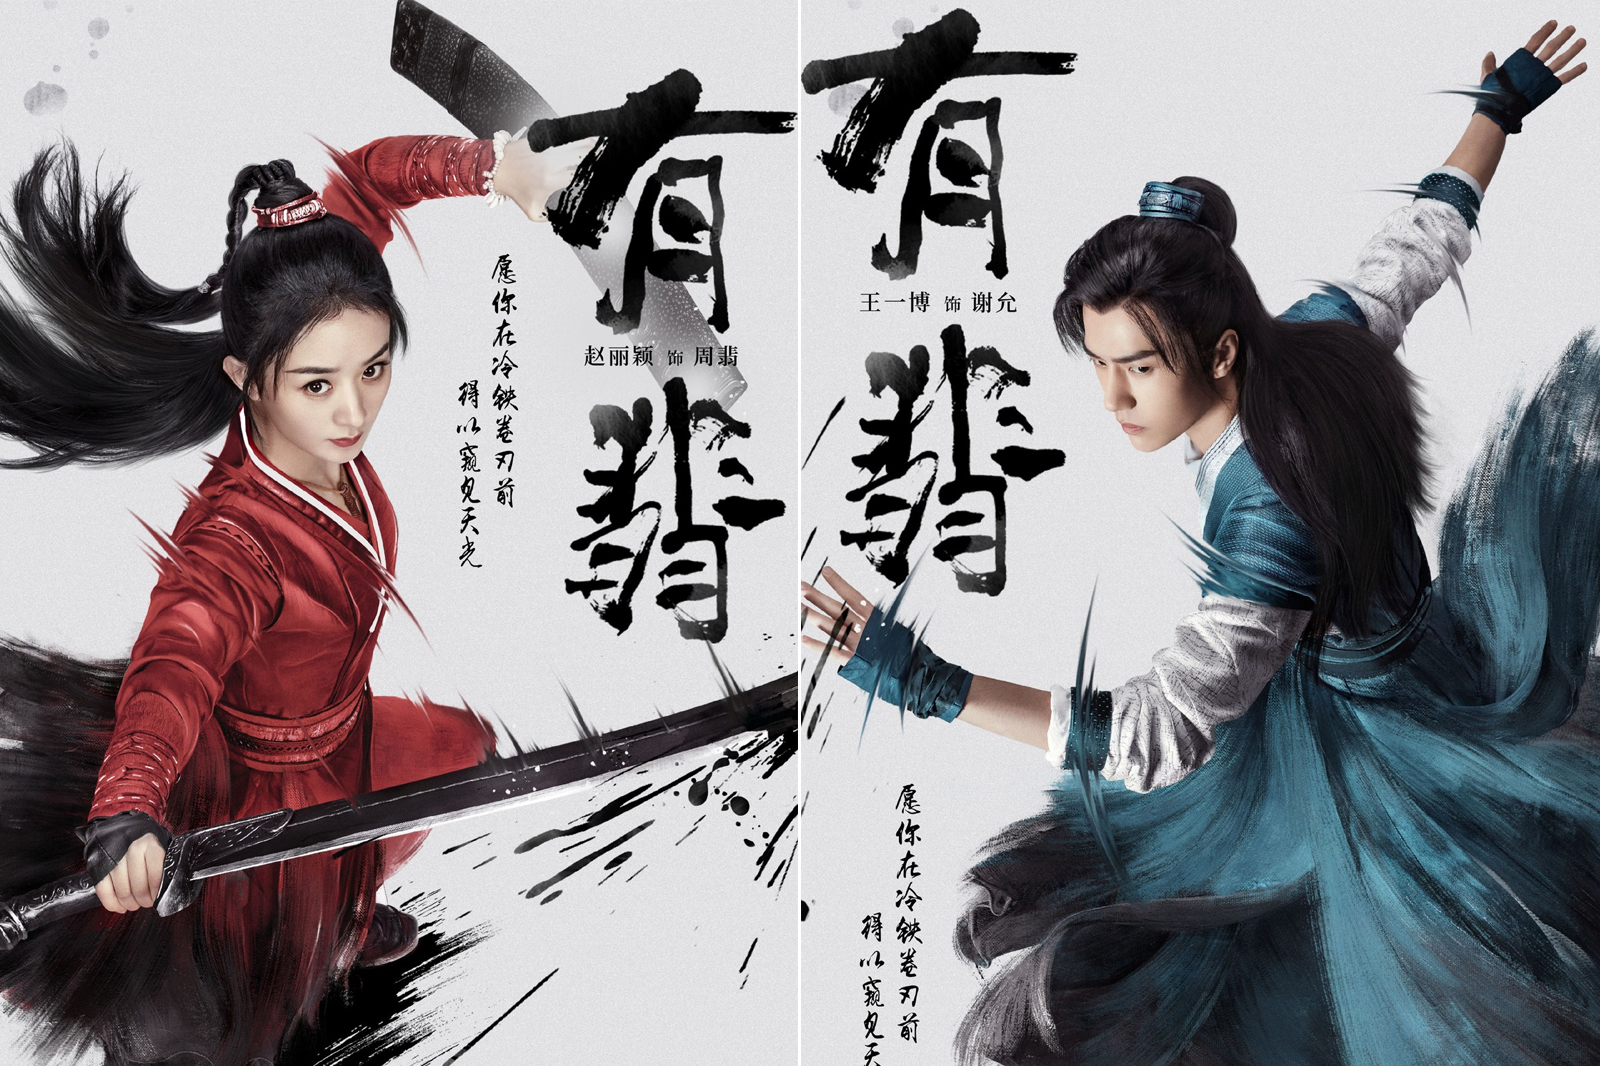 Bộ phim cổ trang 'Hữu phỉ' do Triệu Lệ Dĩnh và Vương Nhất Bác đóng chính sẽ được chiếu trên đài Quý Châu. Đây là lần đầu tiên phim được chiếu đài kể từ khi phát sóng vào năm 2020